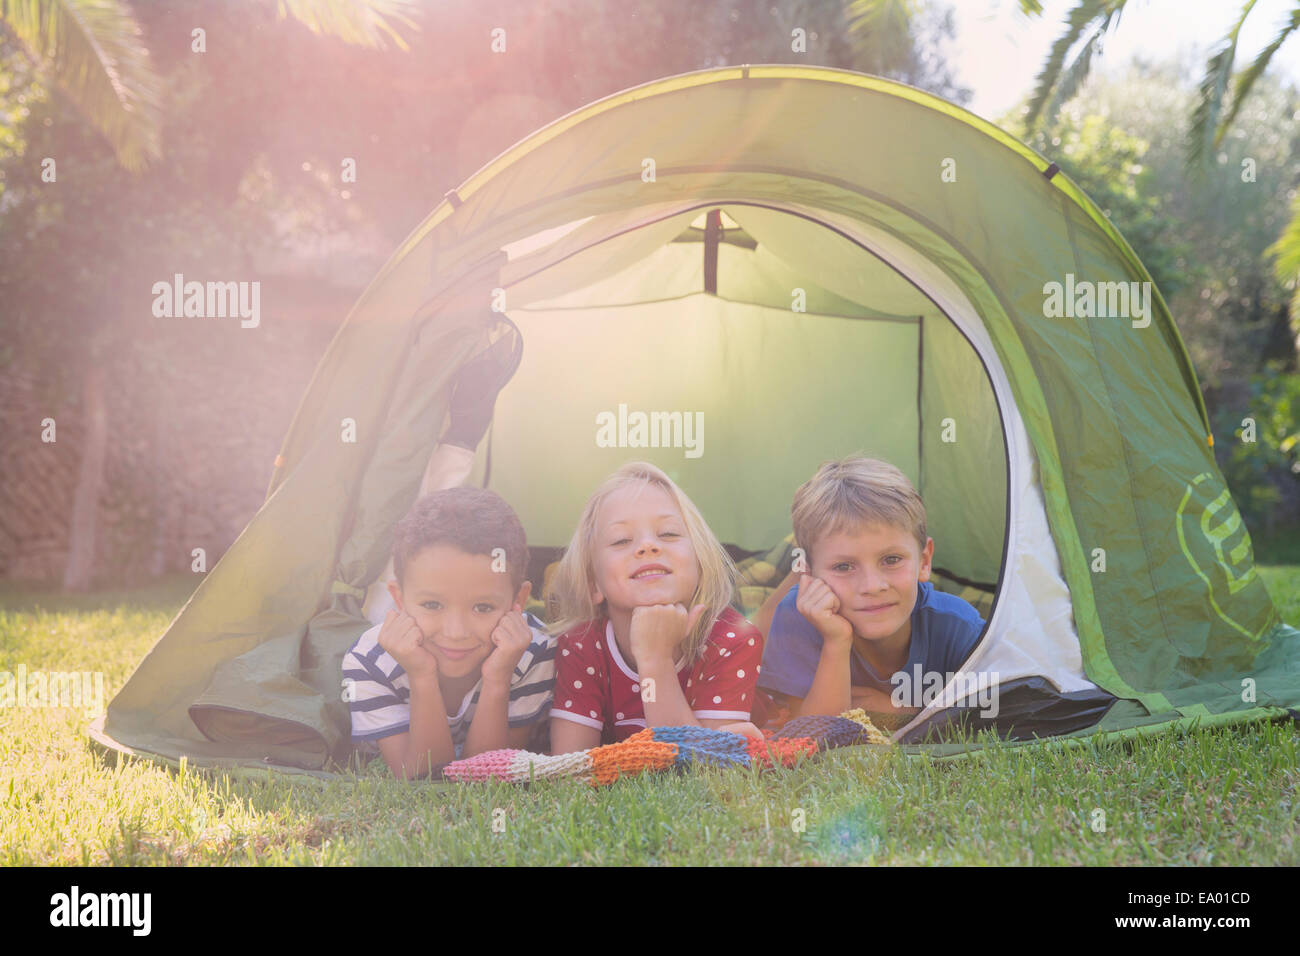 Porträt von drei Kindern im Garten Zelt liegend Stockfoto